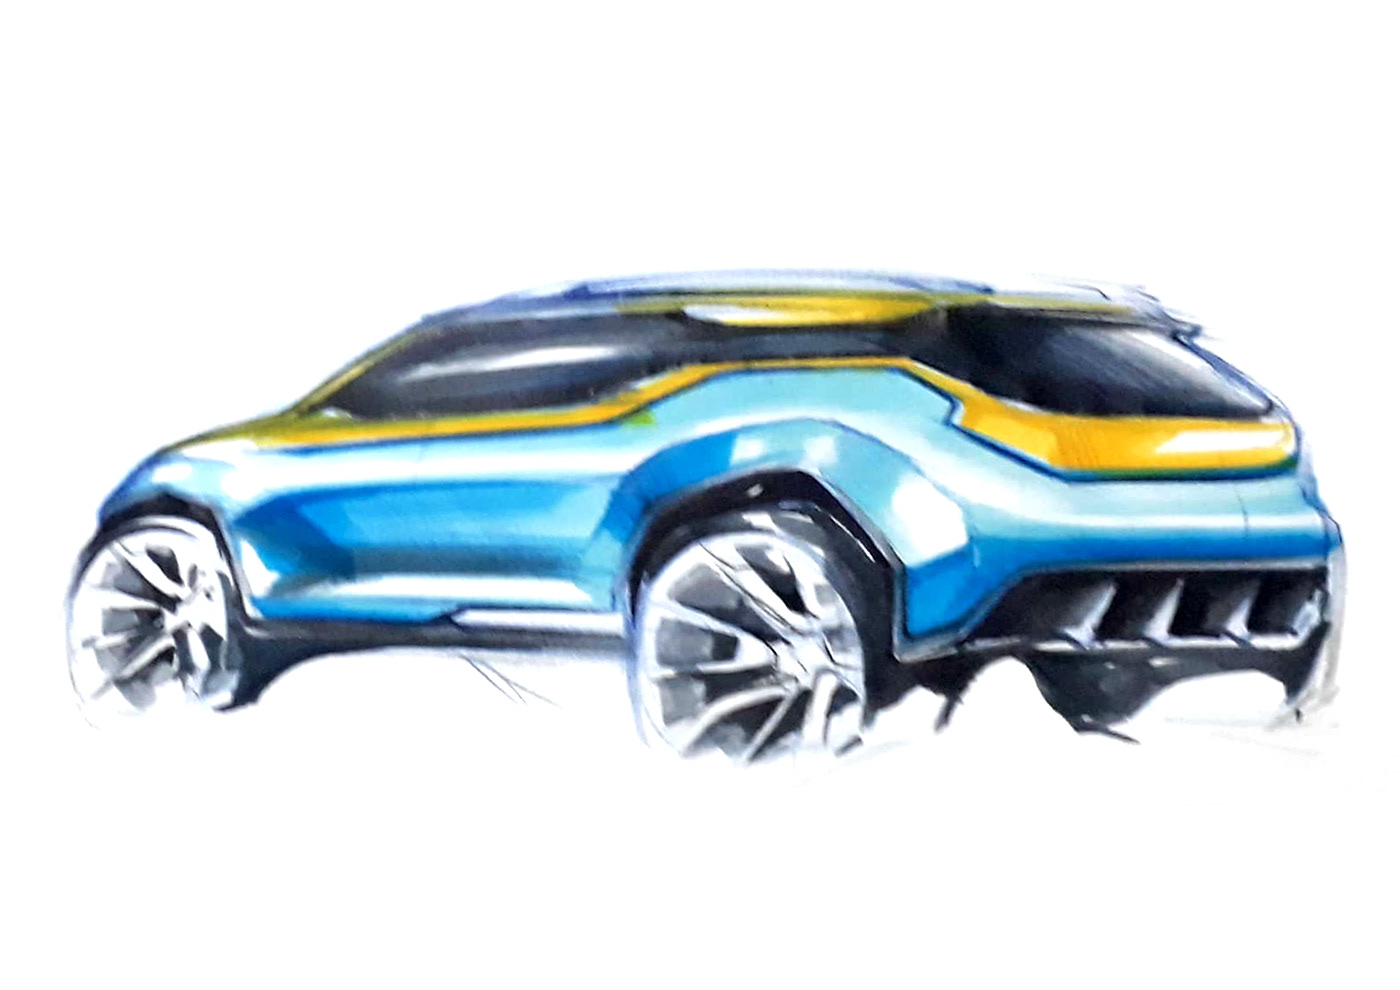 Automotive design car design car render car sketch freehand sketch pencil sketch Transportation Design